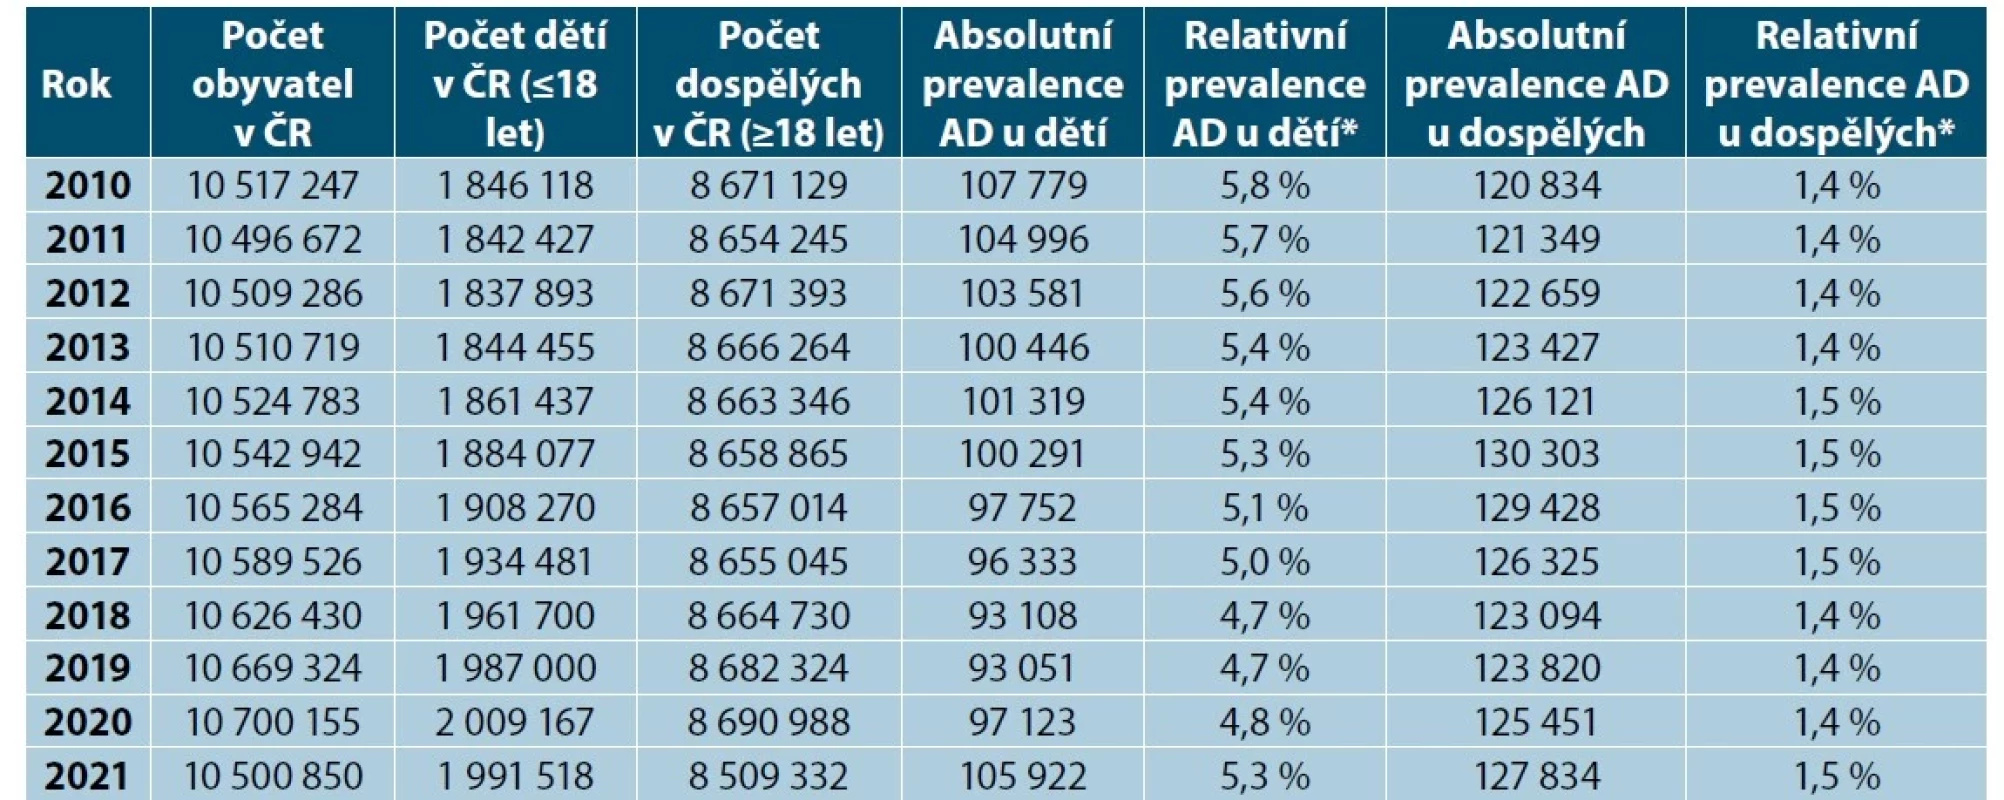 Počet dětí a dospělých s AD v ČR ve vztahu k počtu obyvatel ČR